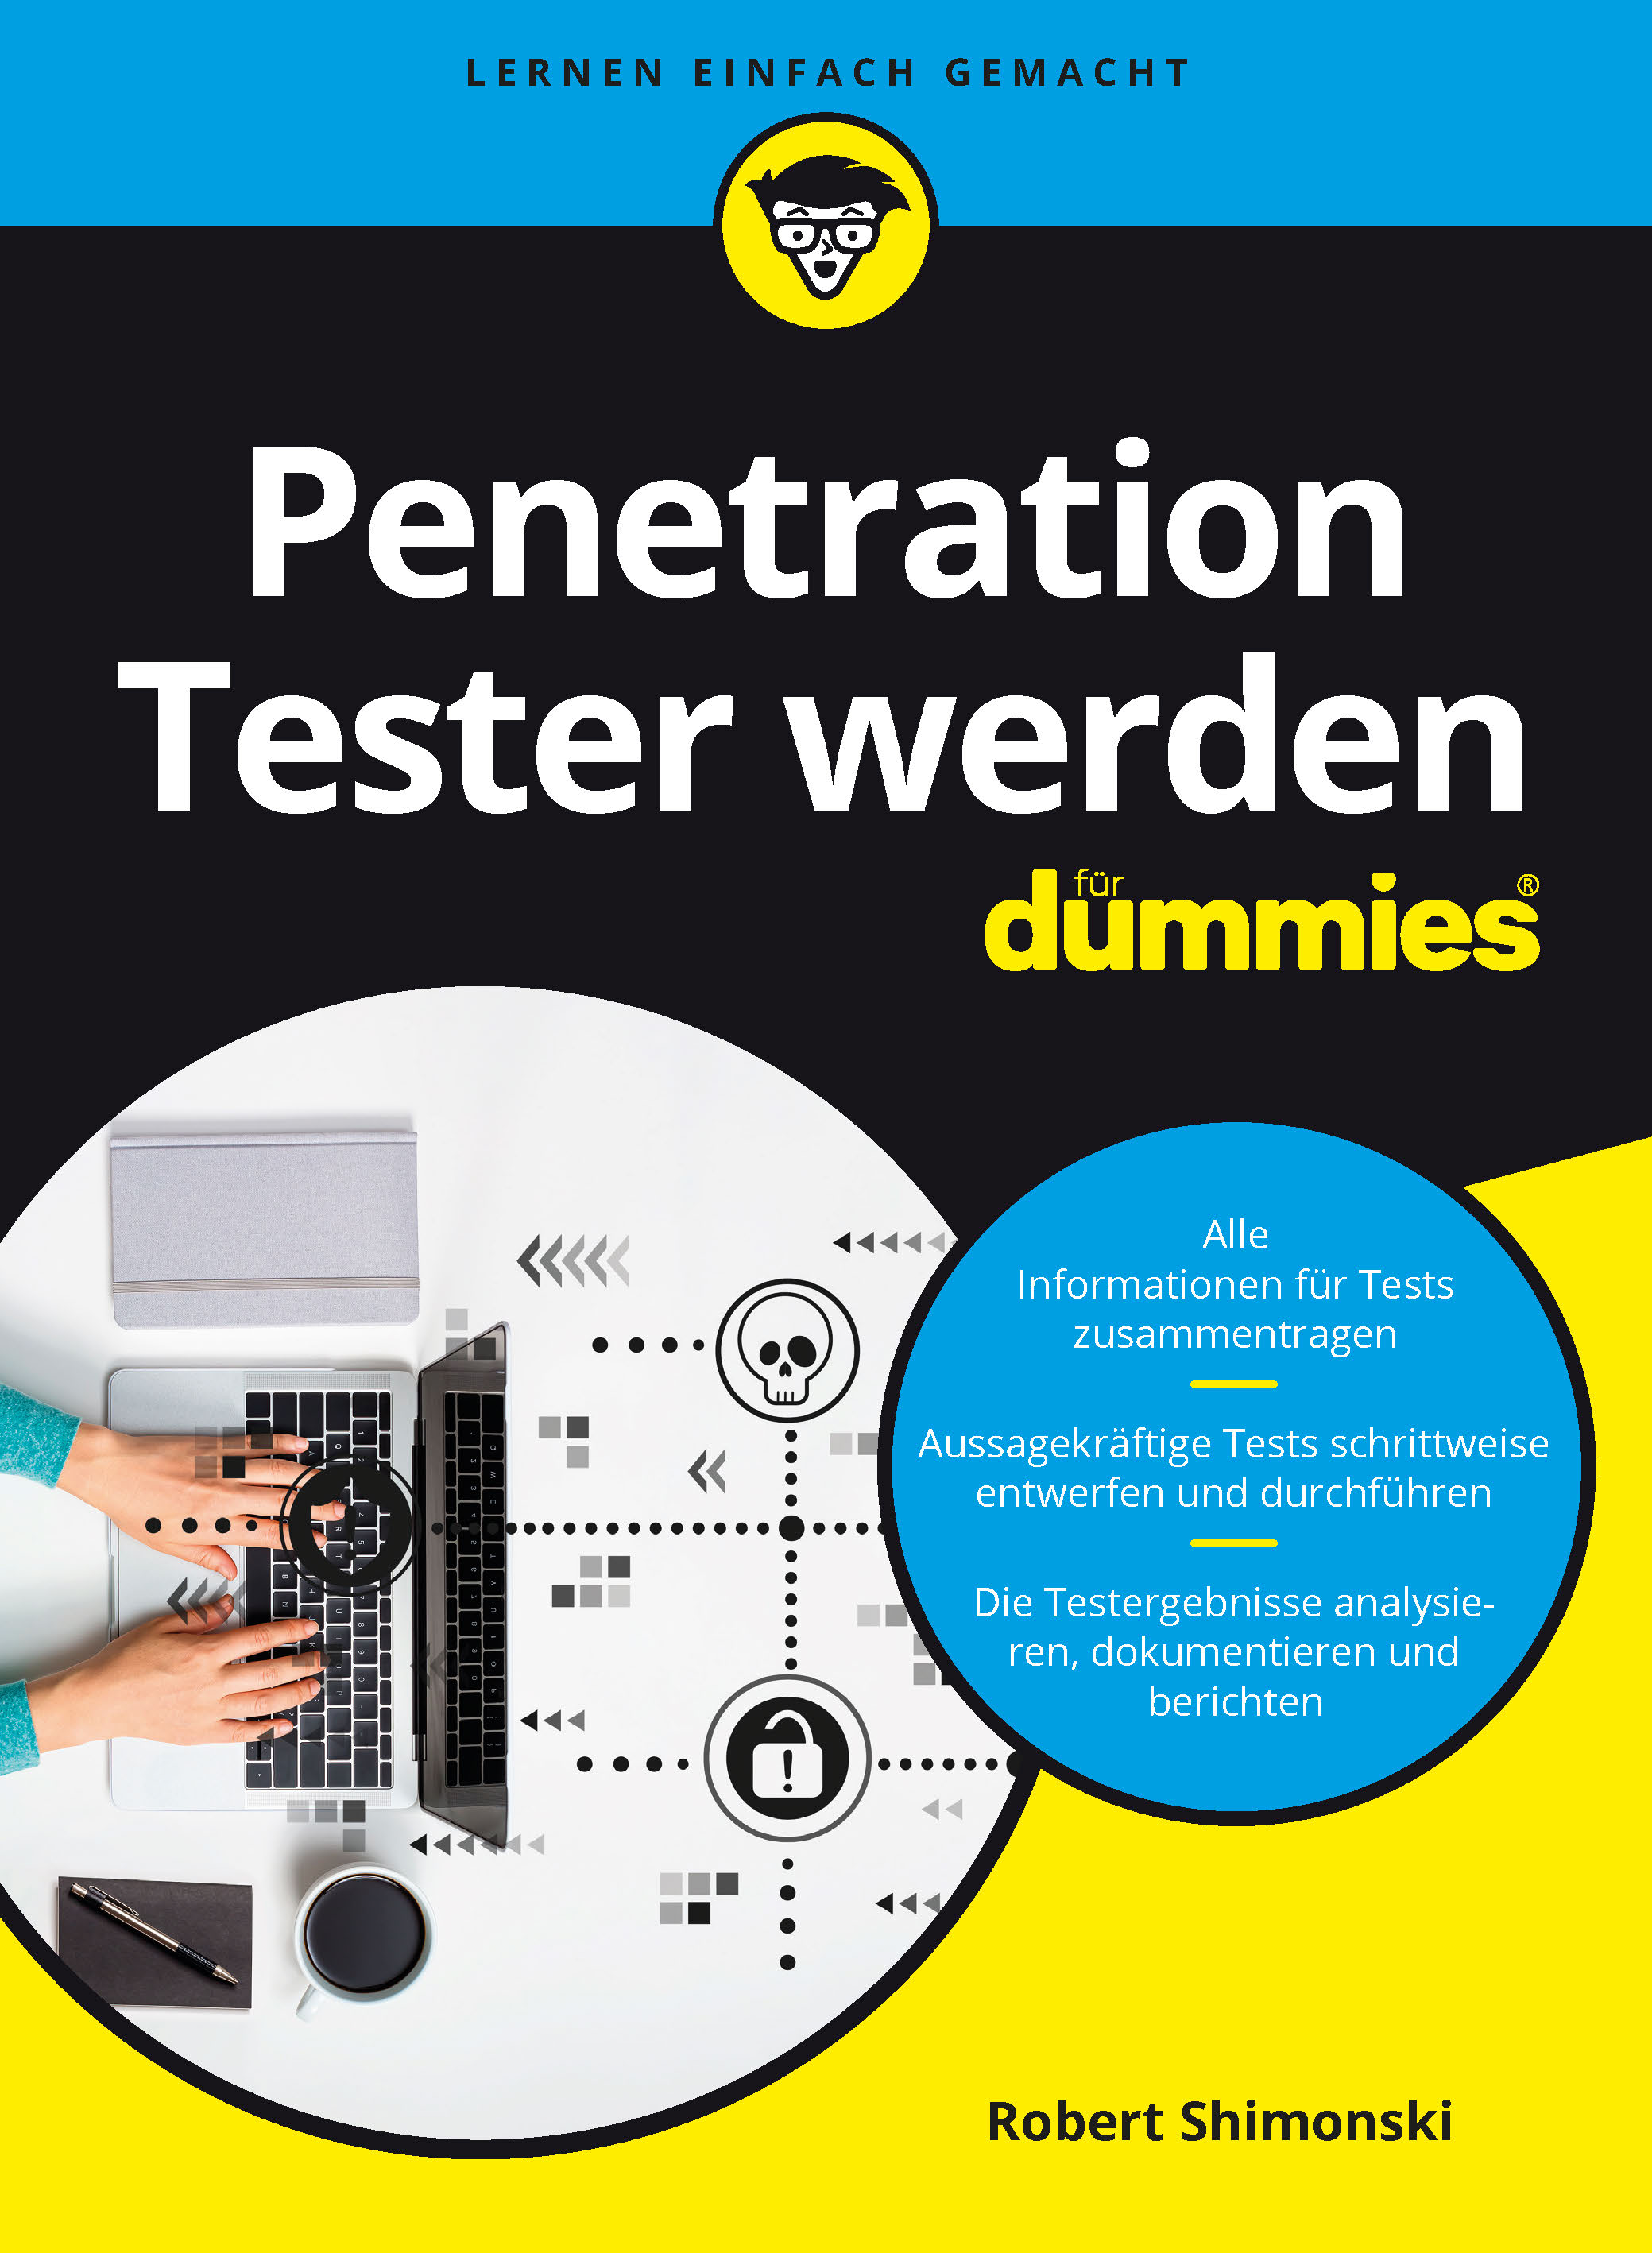 Penetration Tester werden für Dummies